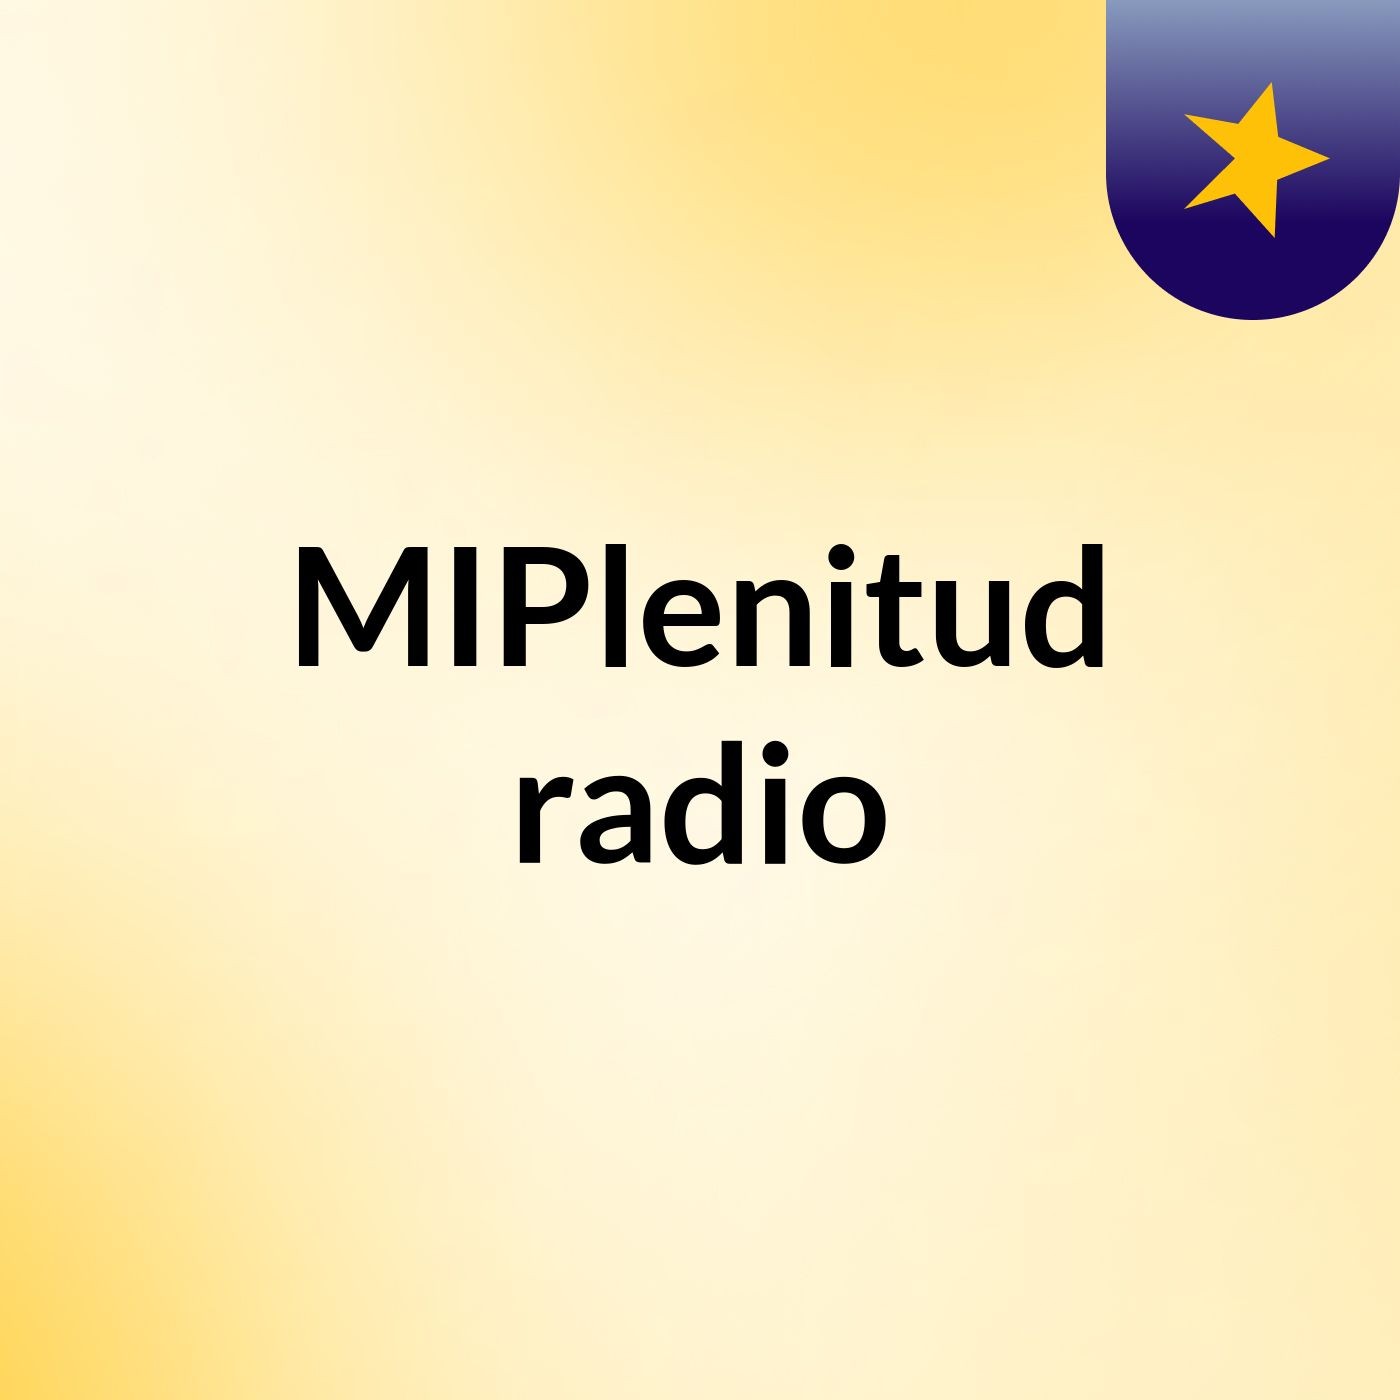 MIPlenitud radio